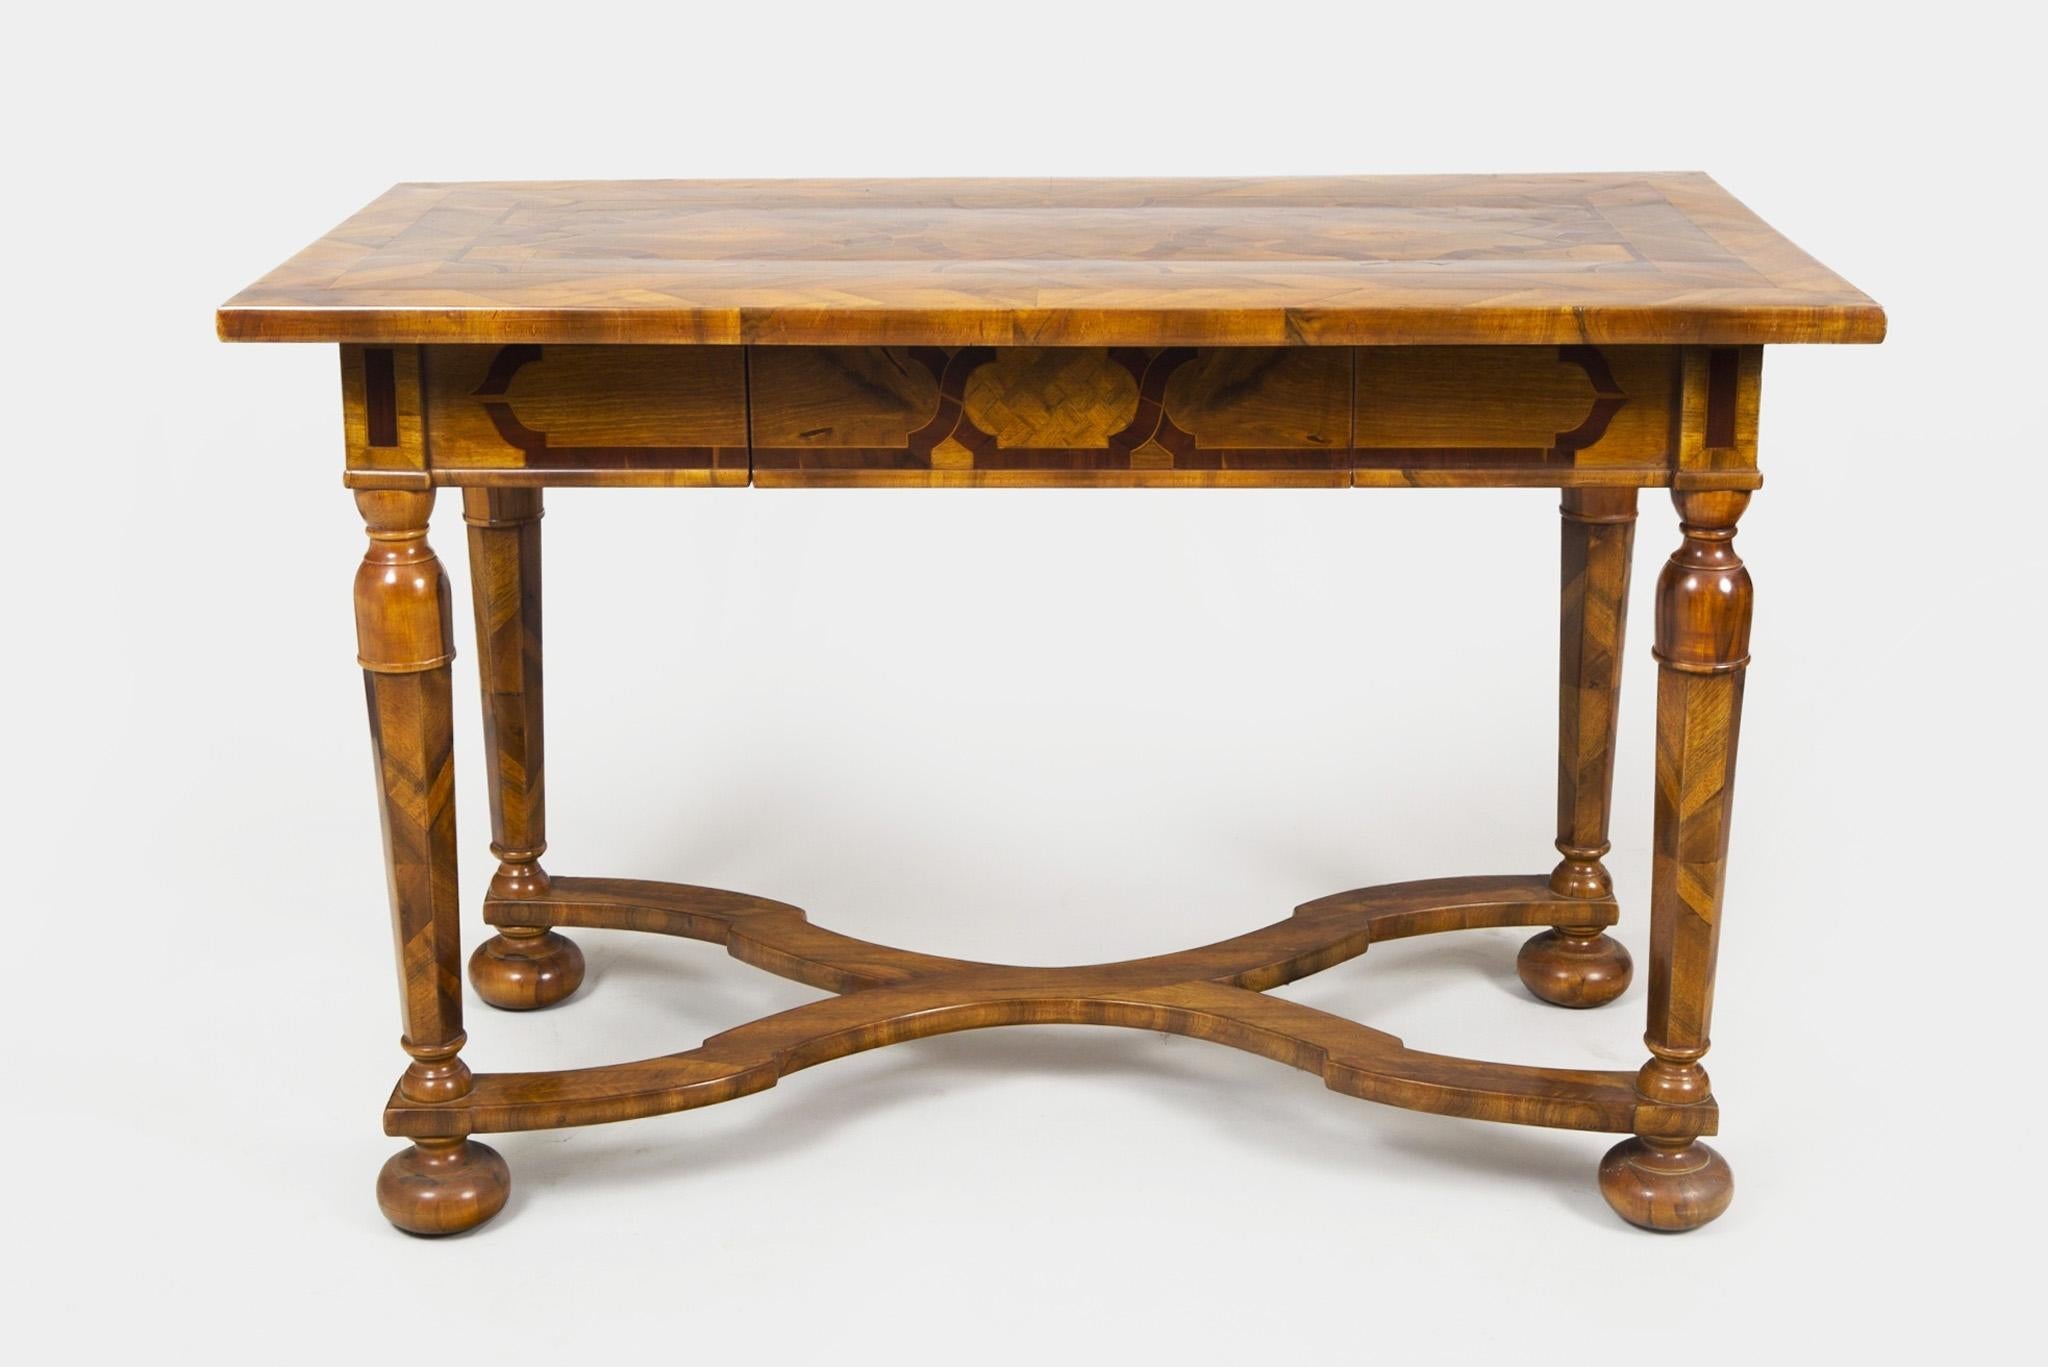 Der Tisch ist aus Nussbaumholz gefertigt und mit Intarsien versehen. Es wurde von unserem Team in Prag vollständig restauriert.